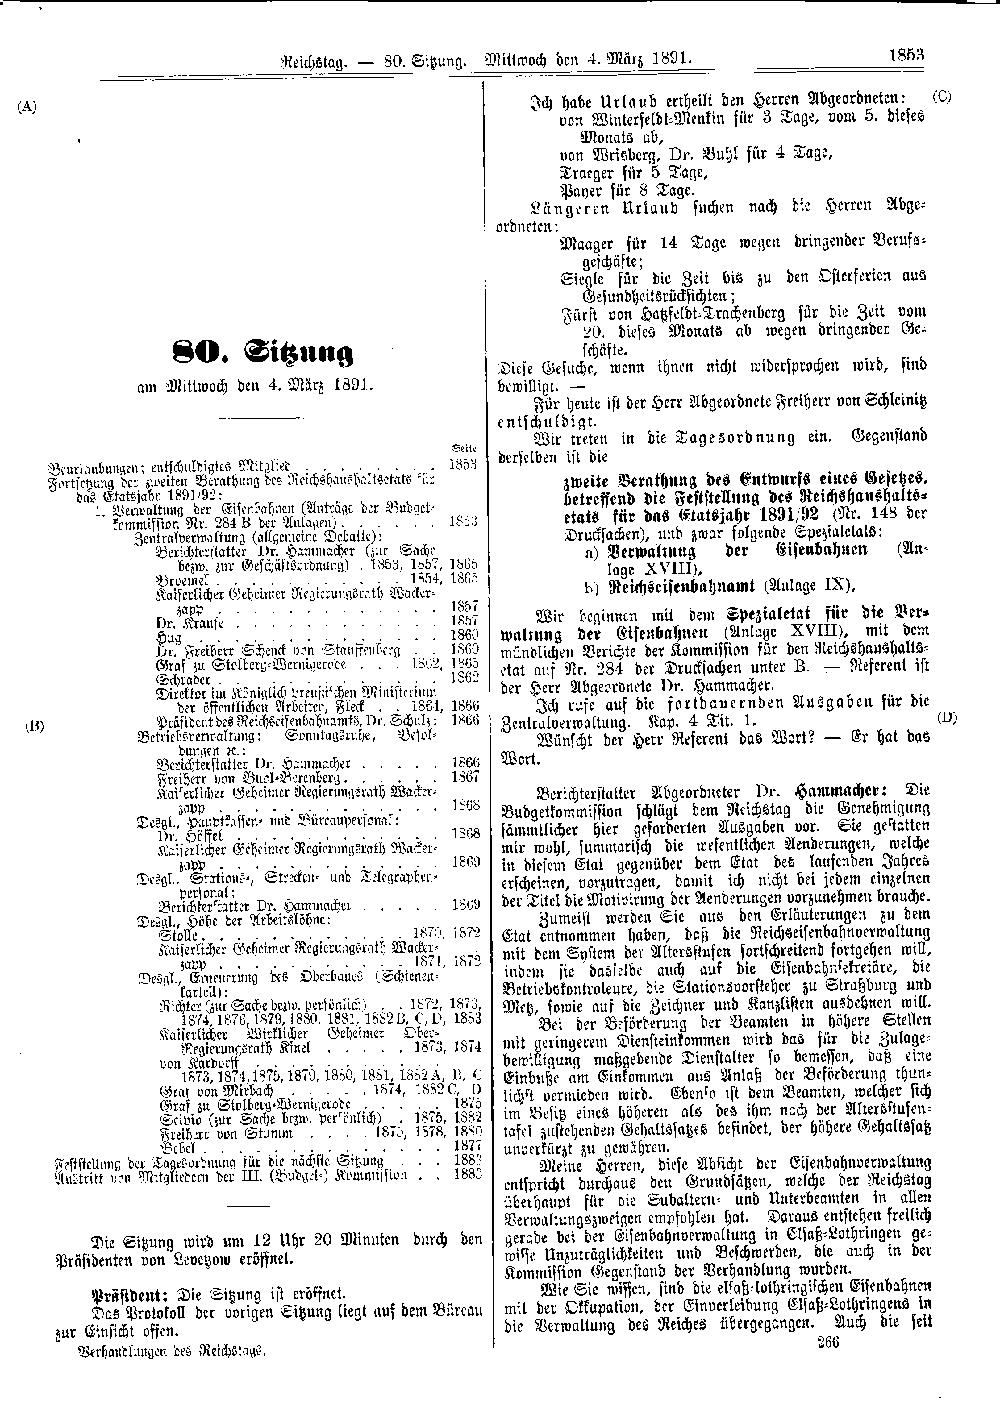 Scan der Seite 1853